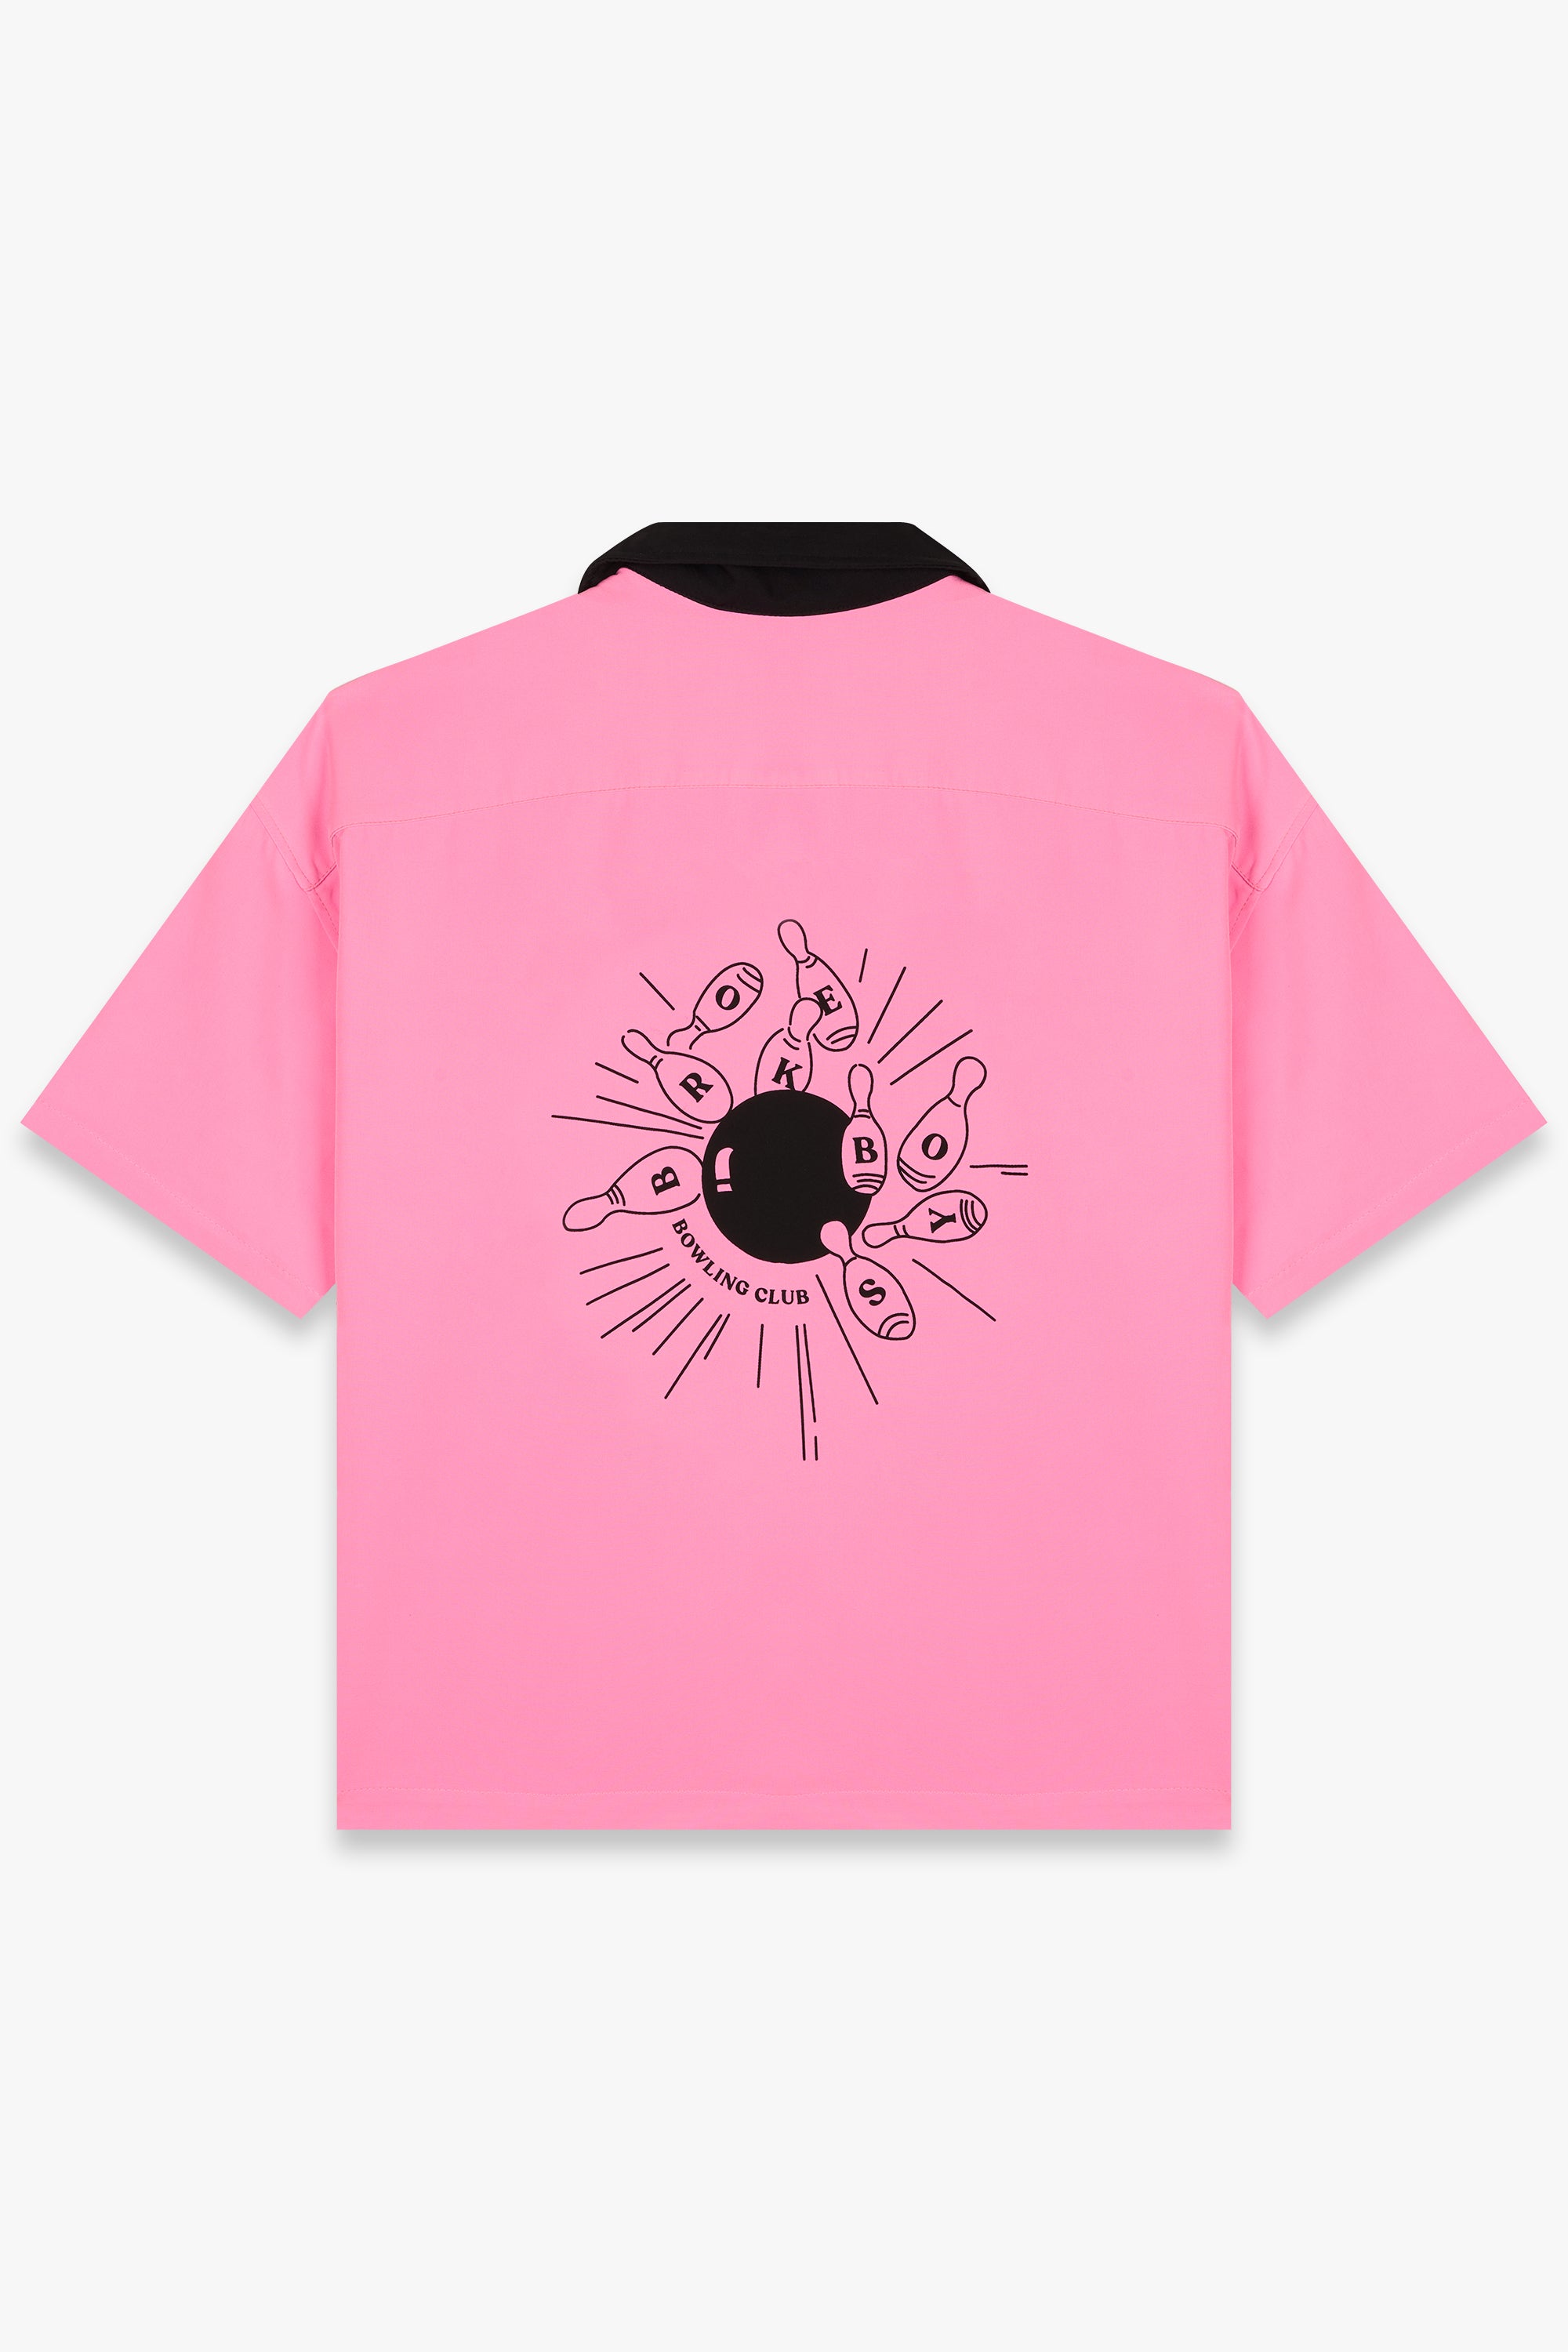 Bowling Club Shirt Pink